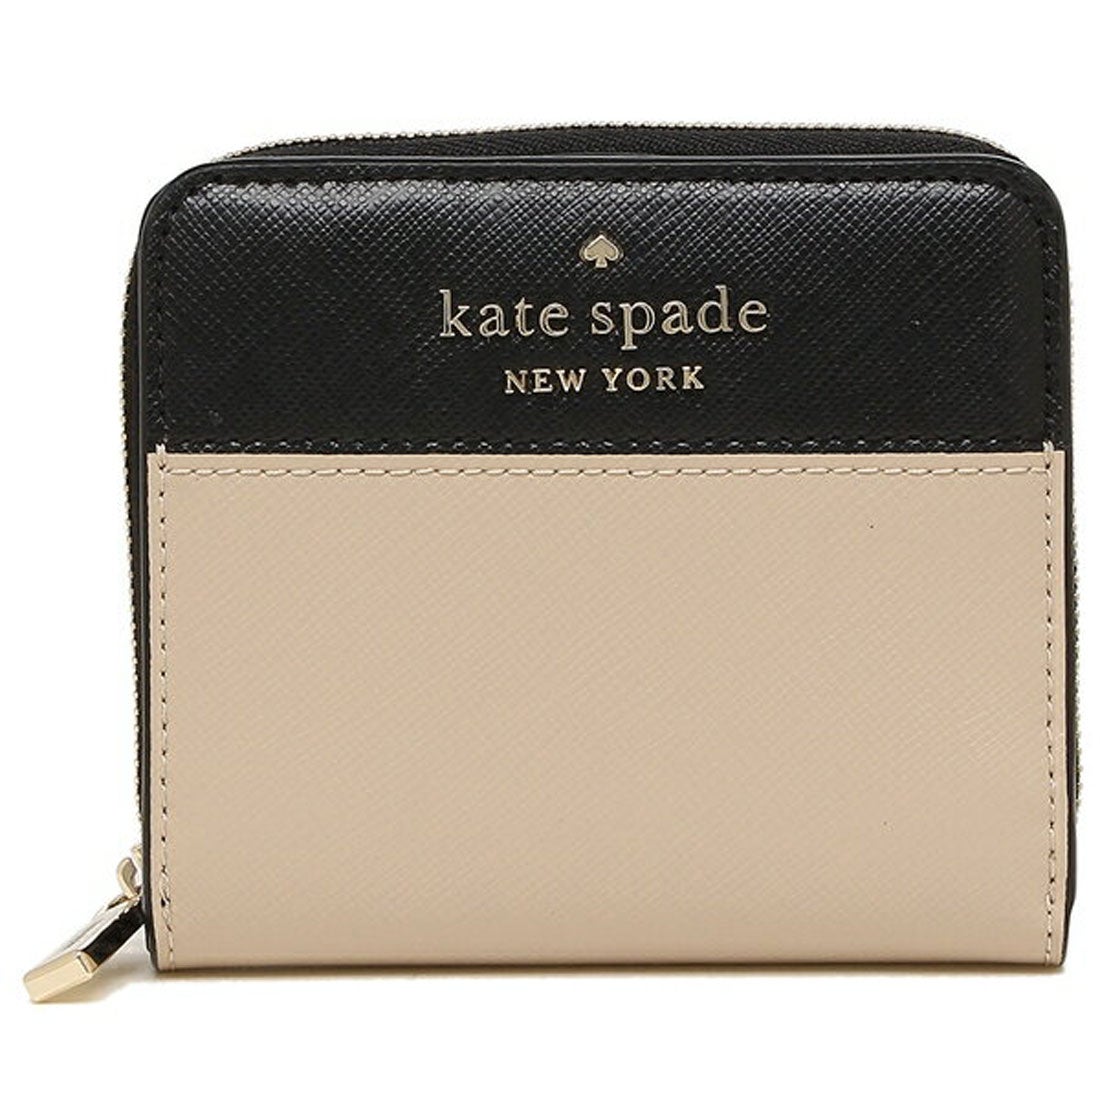 ケイトスペードニューヨーク kate spade new york 財布 二つ折り財布